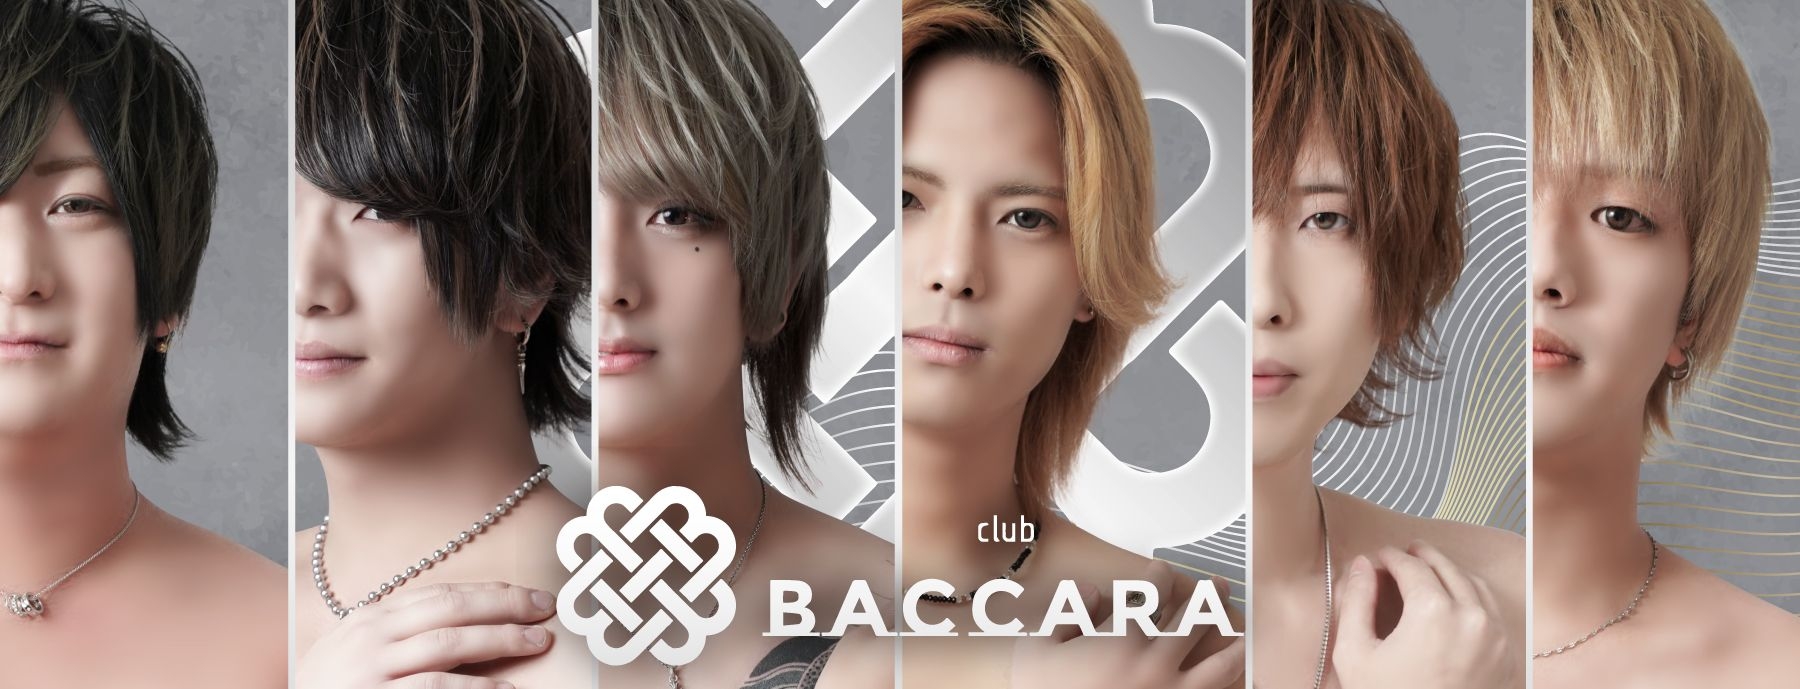 CLUB BACCARA 2nd